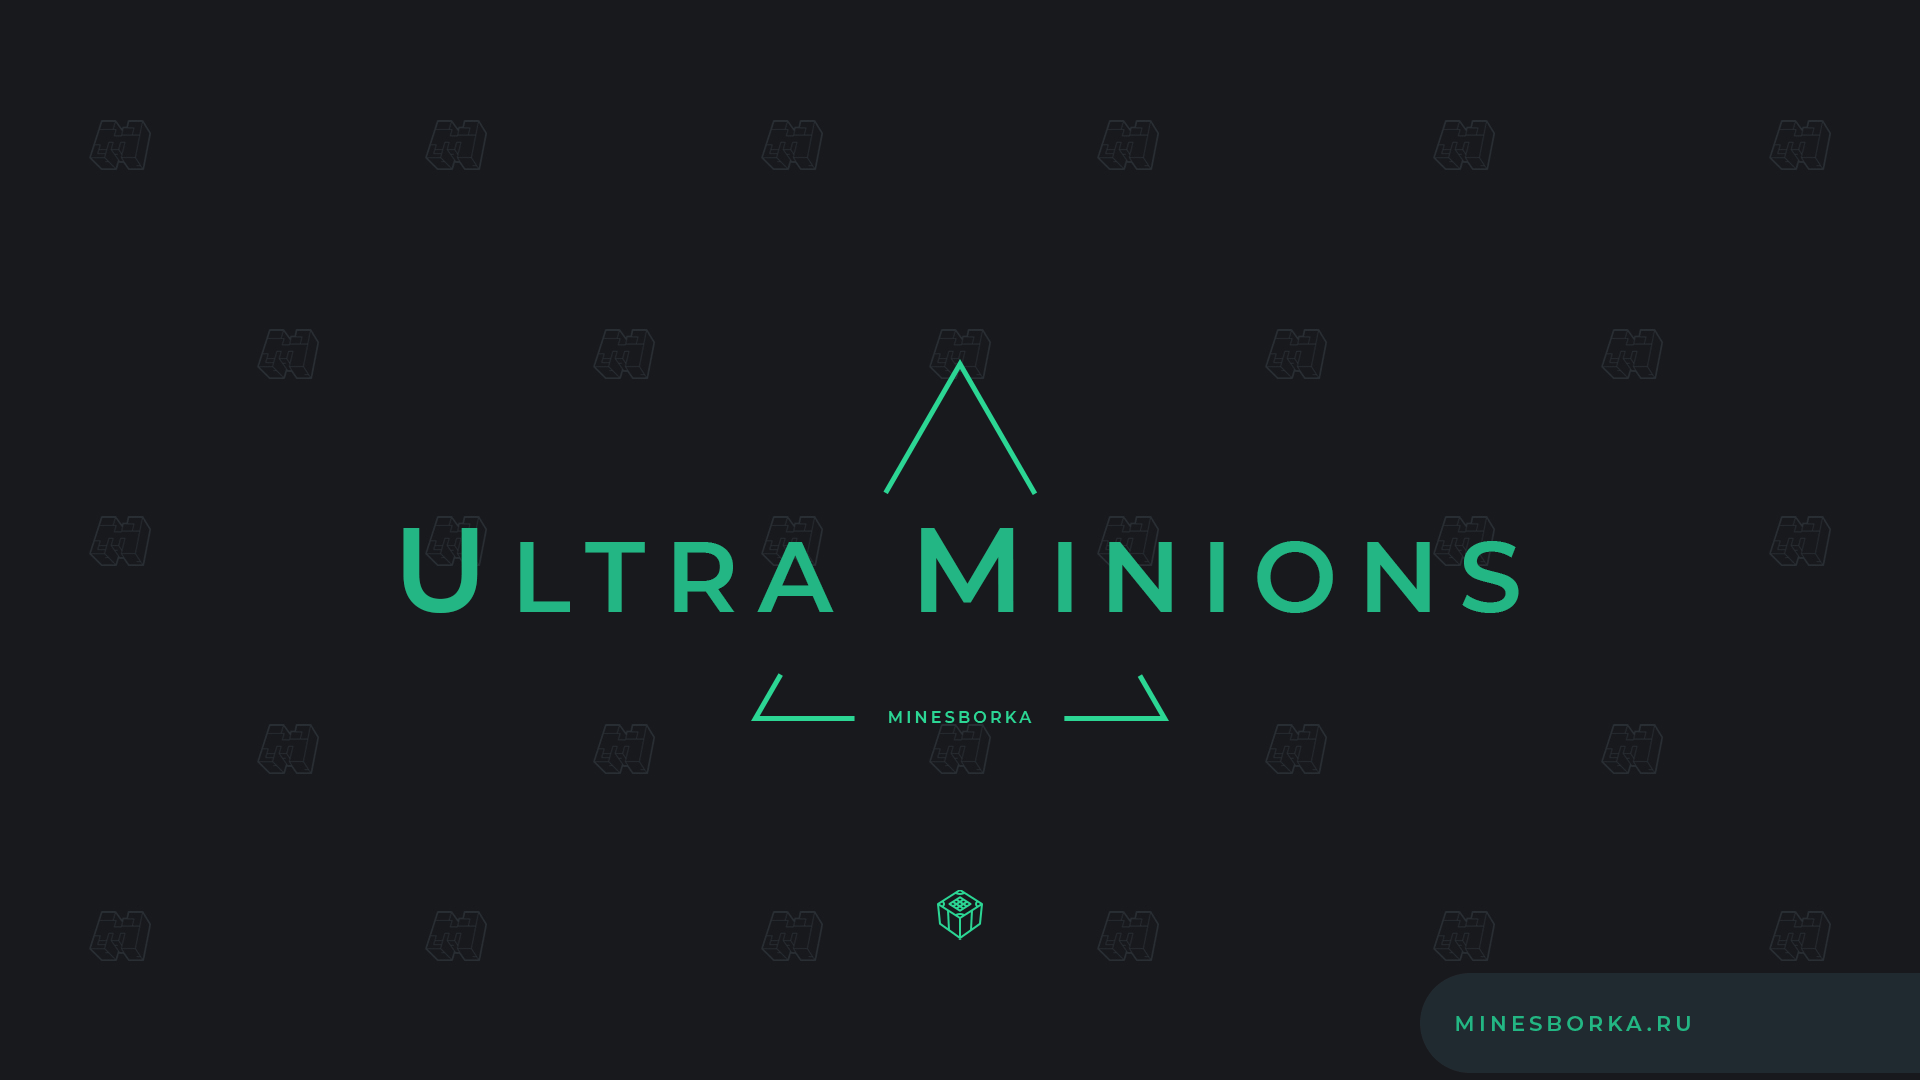 Плагин ULTRA MINIONS | Миньоны в Minecraft | Диалоги, работы, улучшения, скины